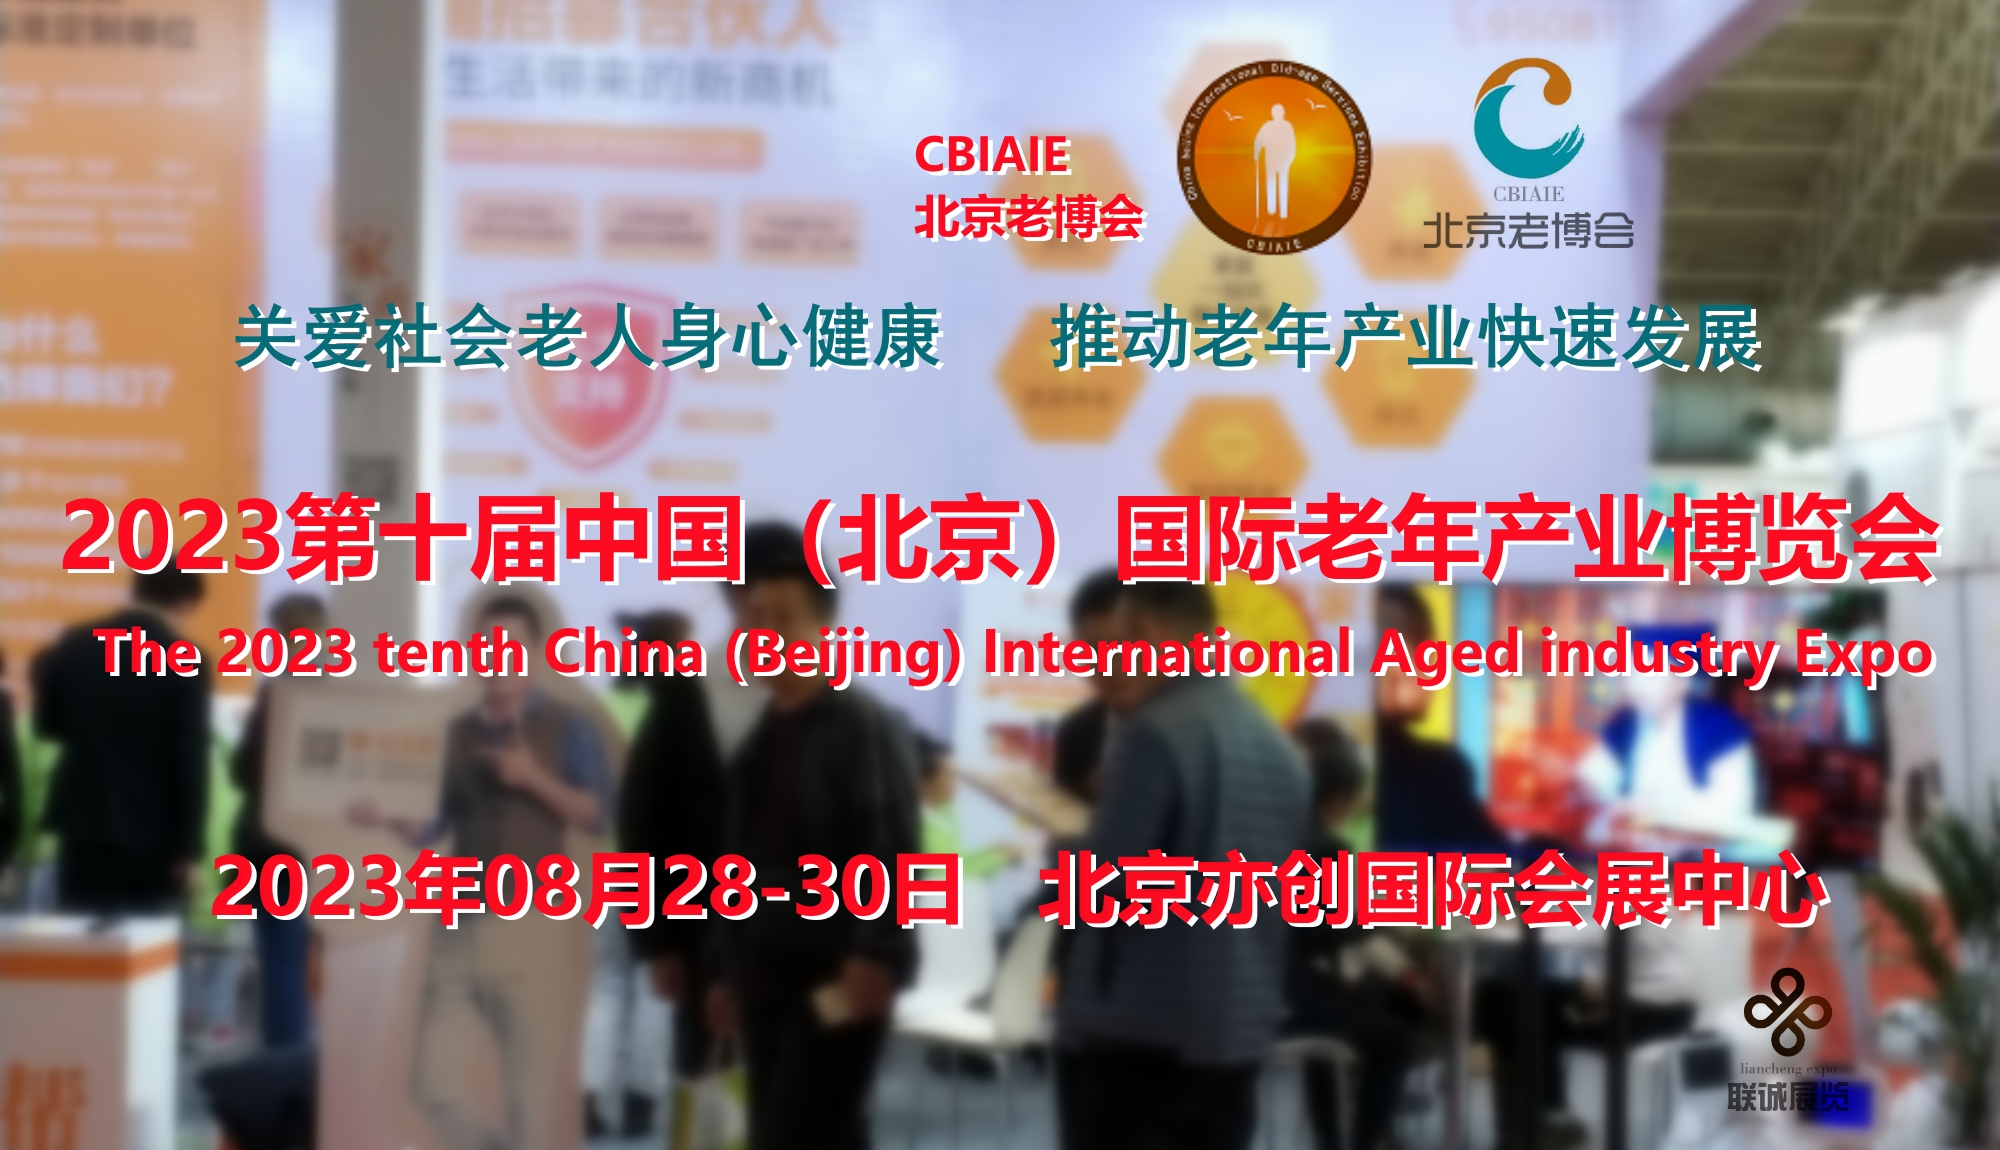 2023北京养老展会（CBIAIE）打造年度唯具参展价值盛会